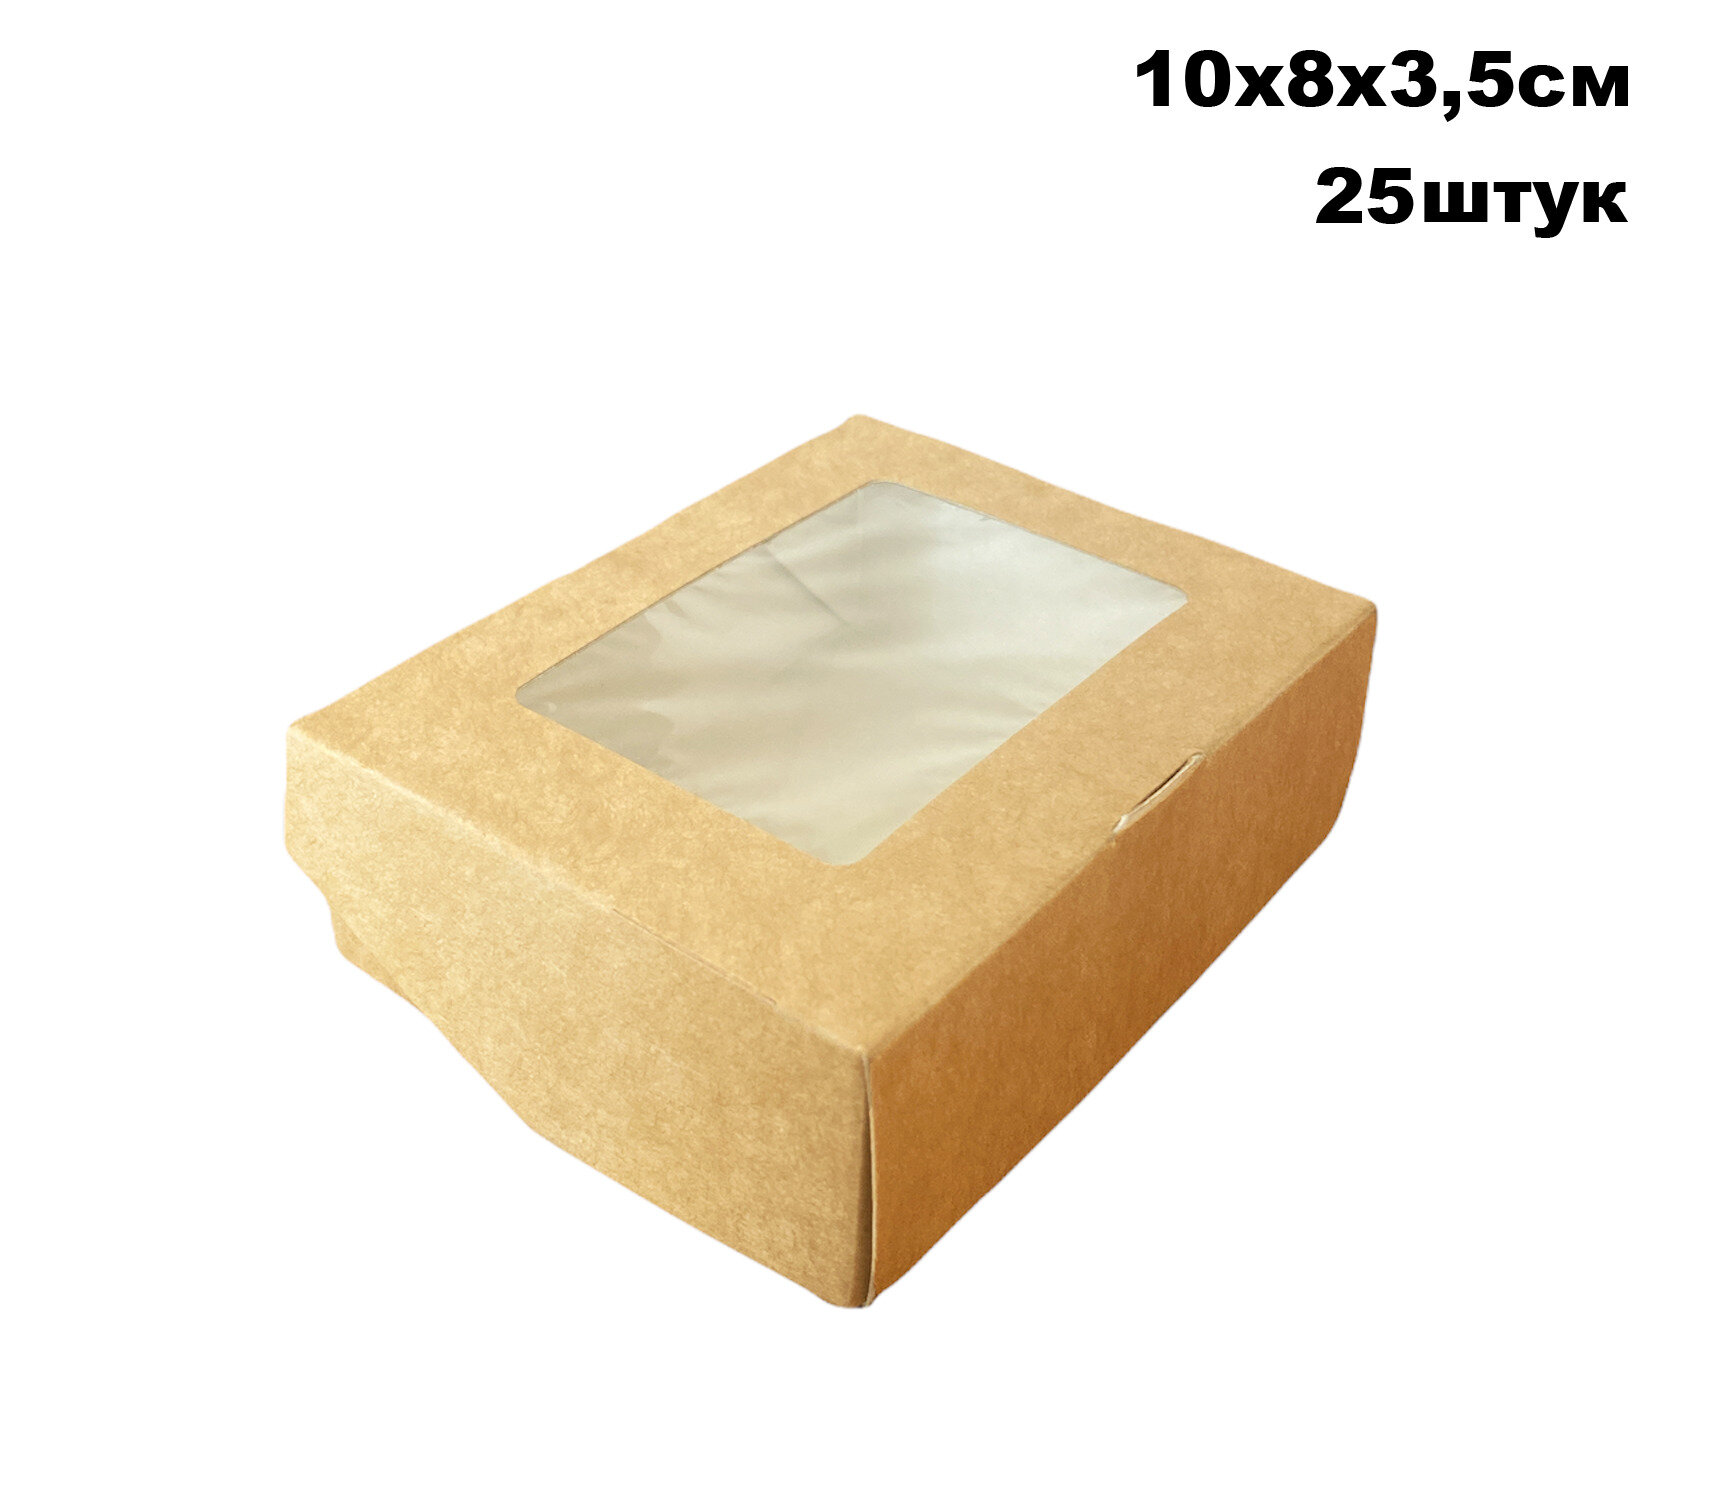 Крафт коробка с окном - 10х8х3,5 см, 25штук